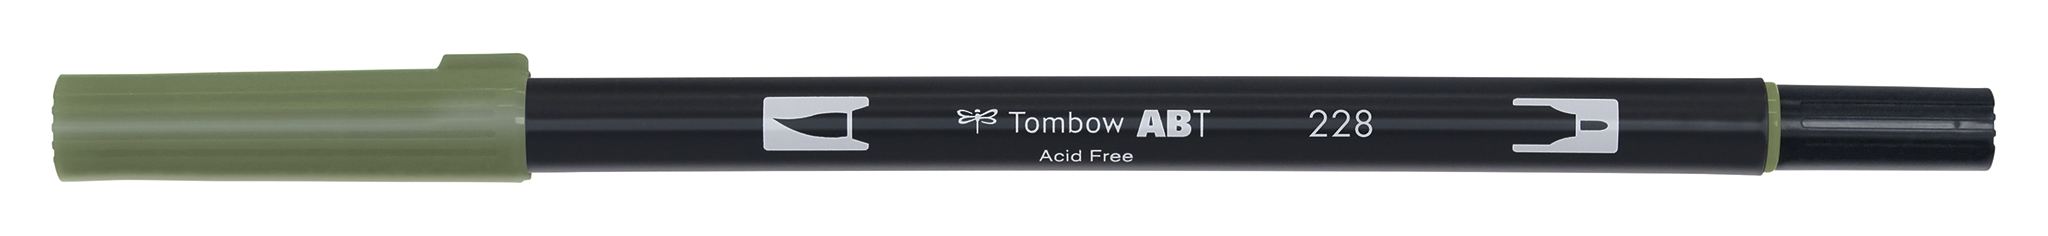 Tombow Art Brush Pen, gray green